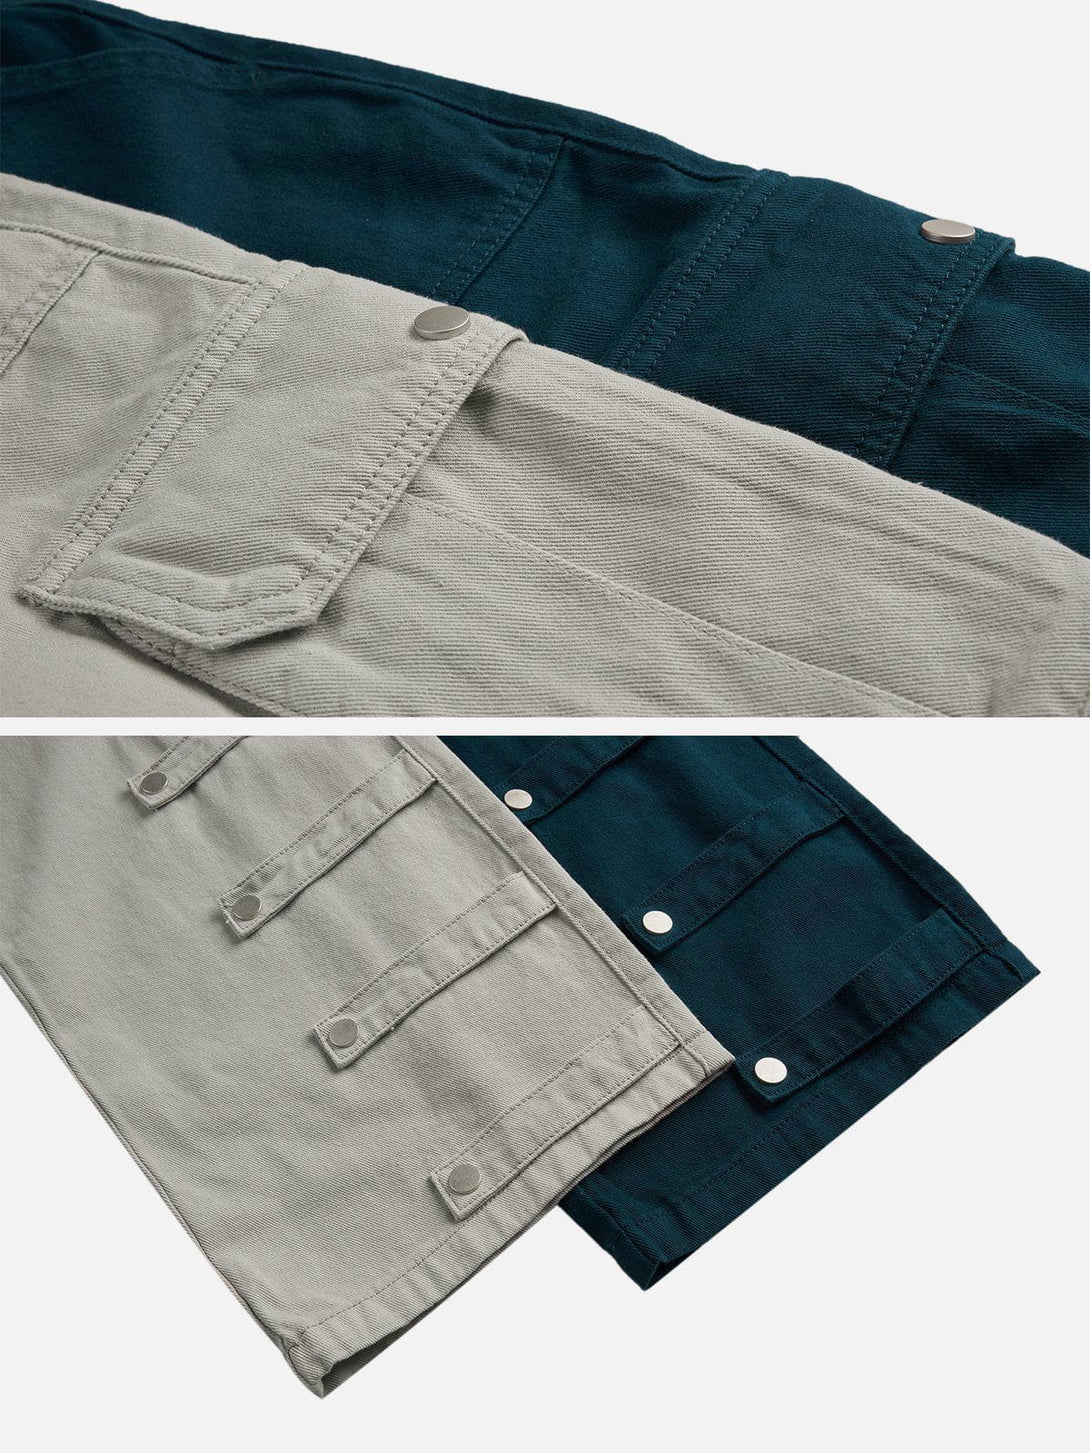 AlanBalen® - Patchwork Pockets with Flap Pants AlanBalen